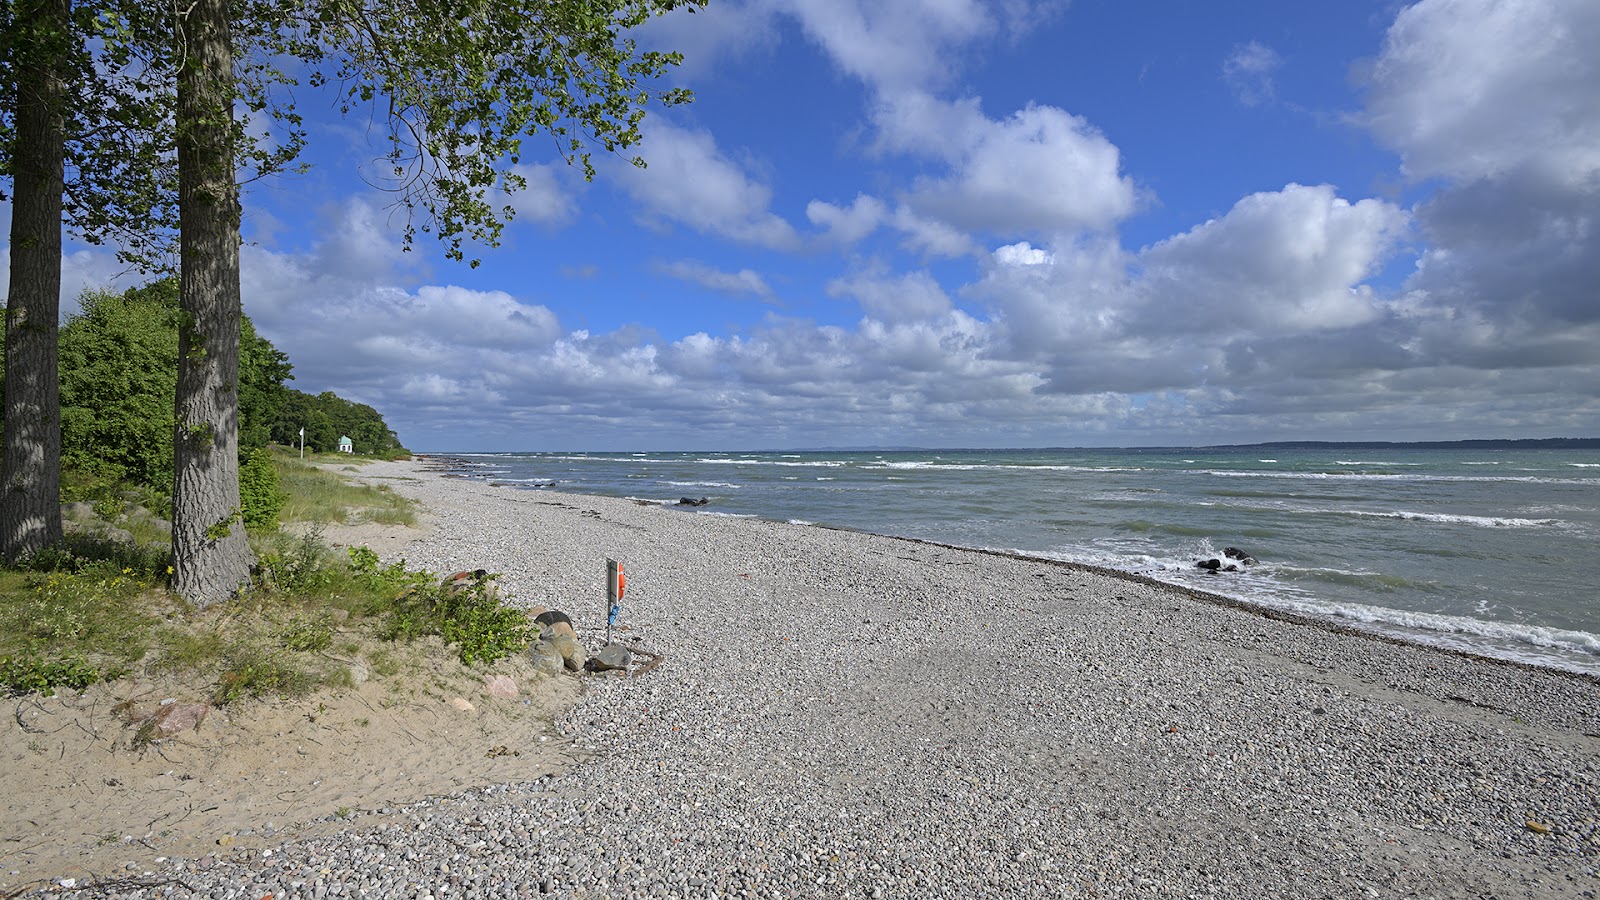 Fotografie cu Julebek Beach - locul popular printre cunoscătorii de relaxare